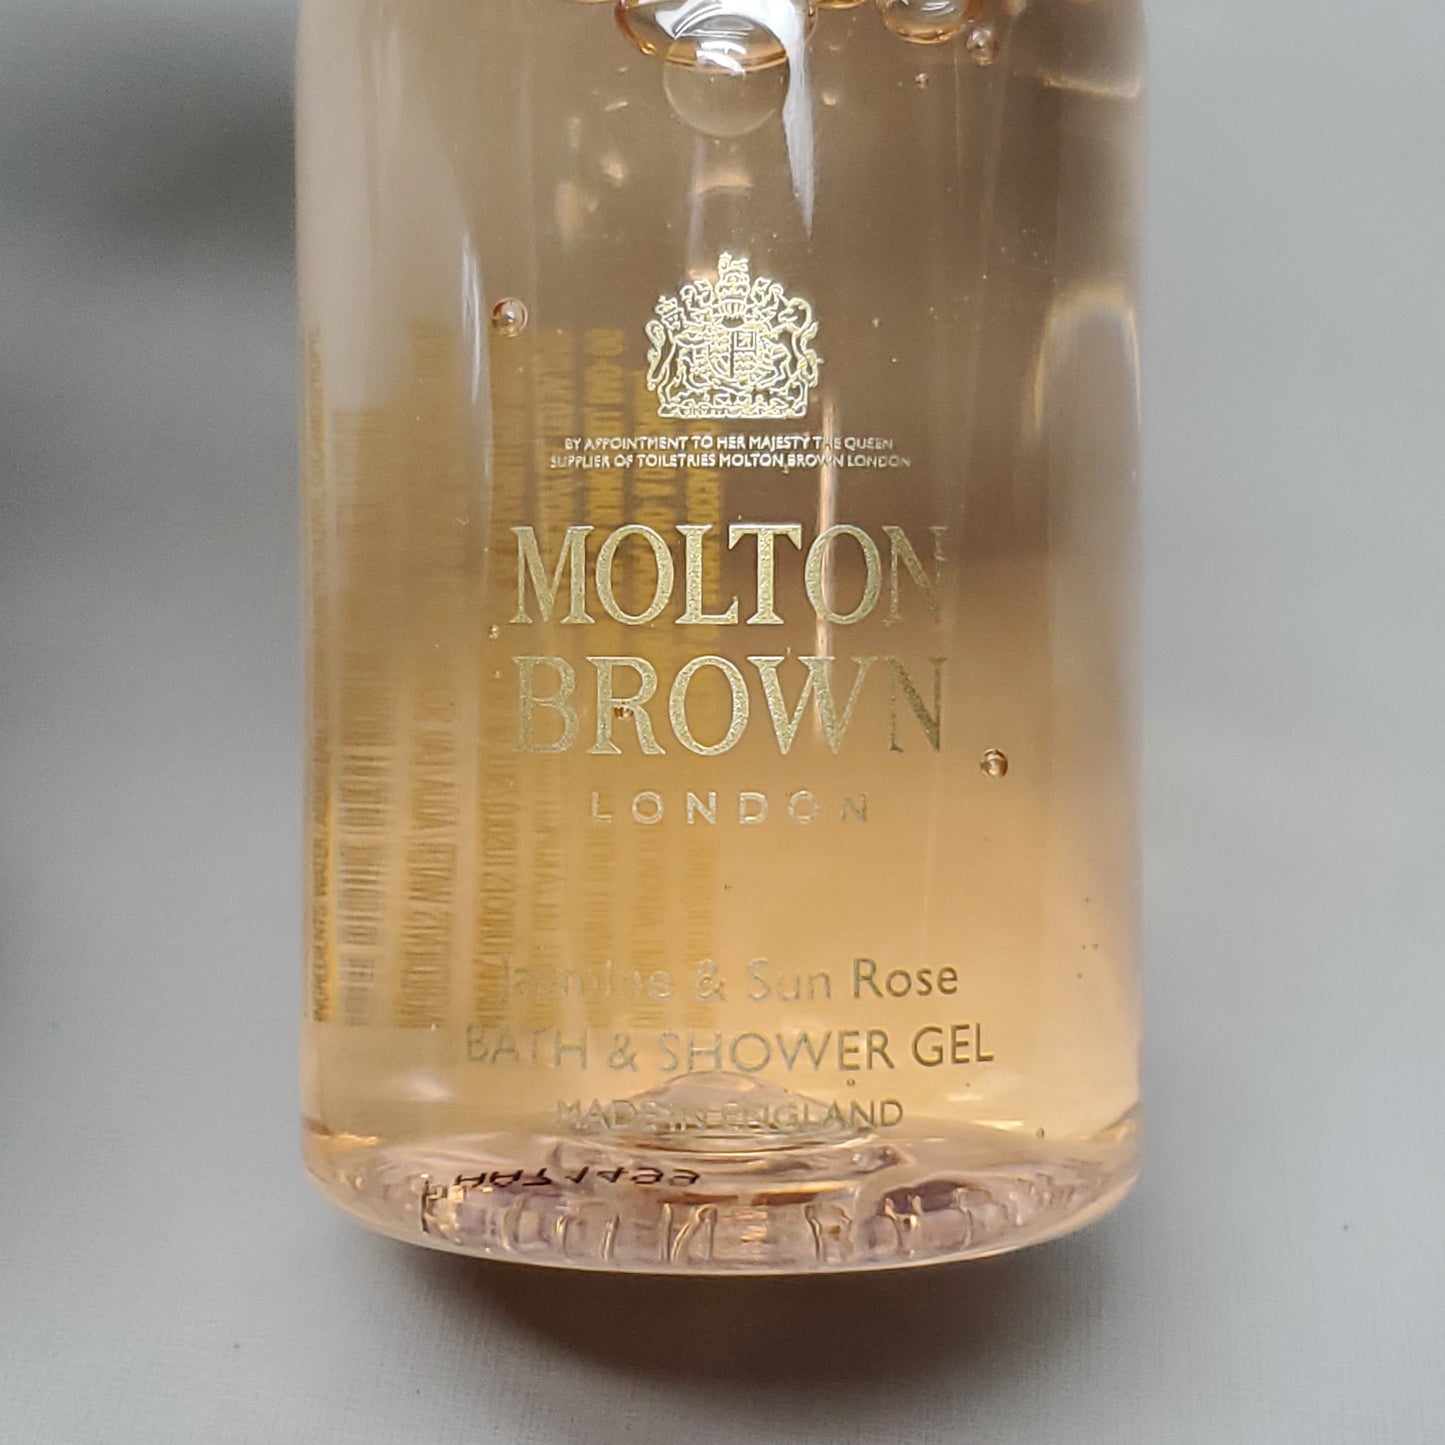 MOLTON BROWN London 3 pc set Jasmine & Sun Rose Bath & Shower Gel & Body Lotion 3.3 fl oz & Eau De Toilette 1.7 fl oz